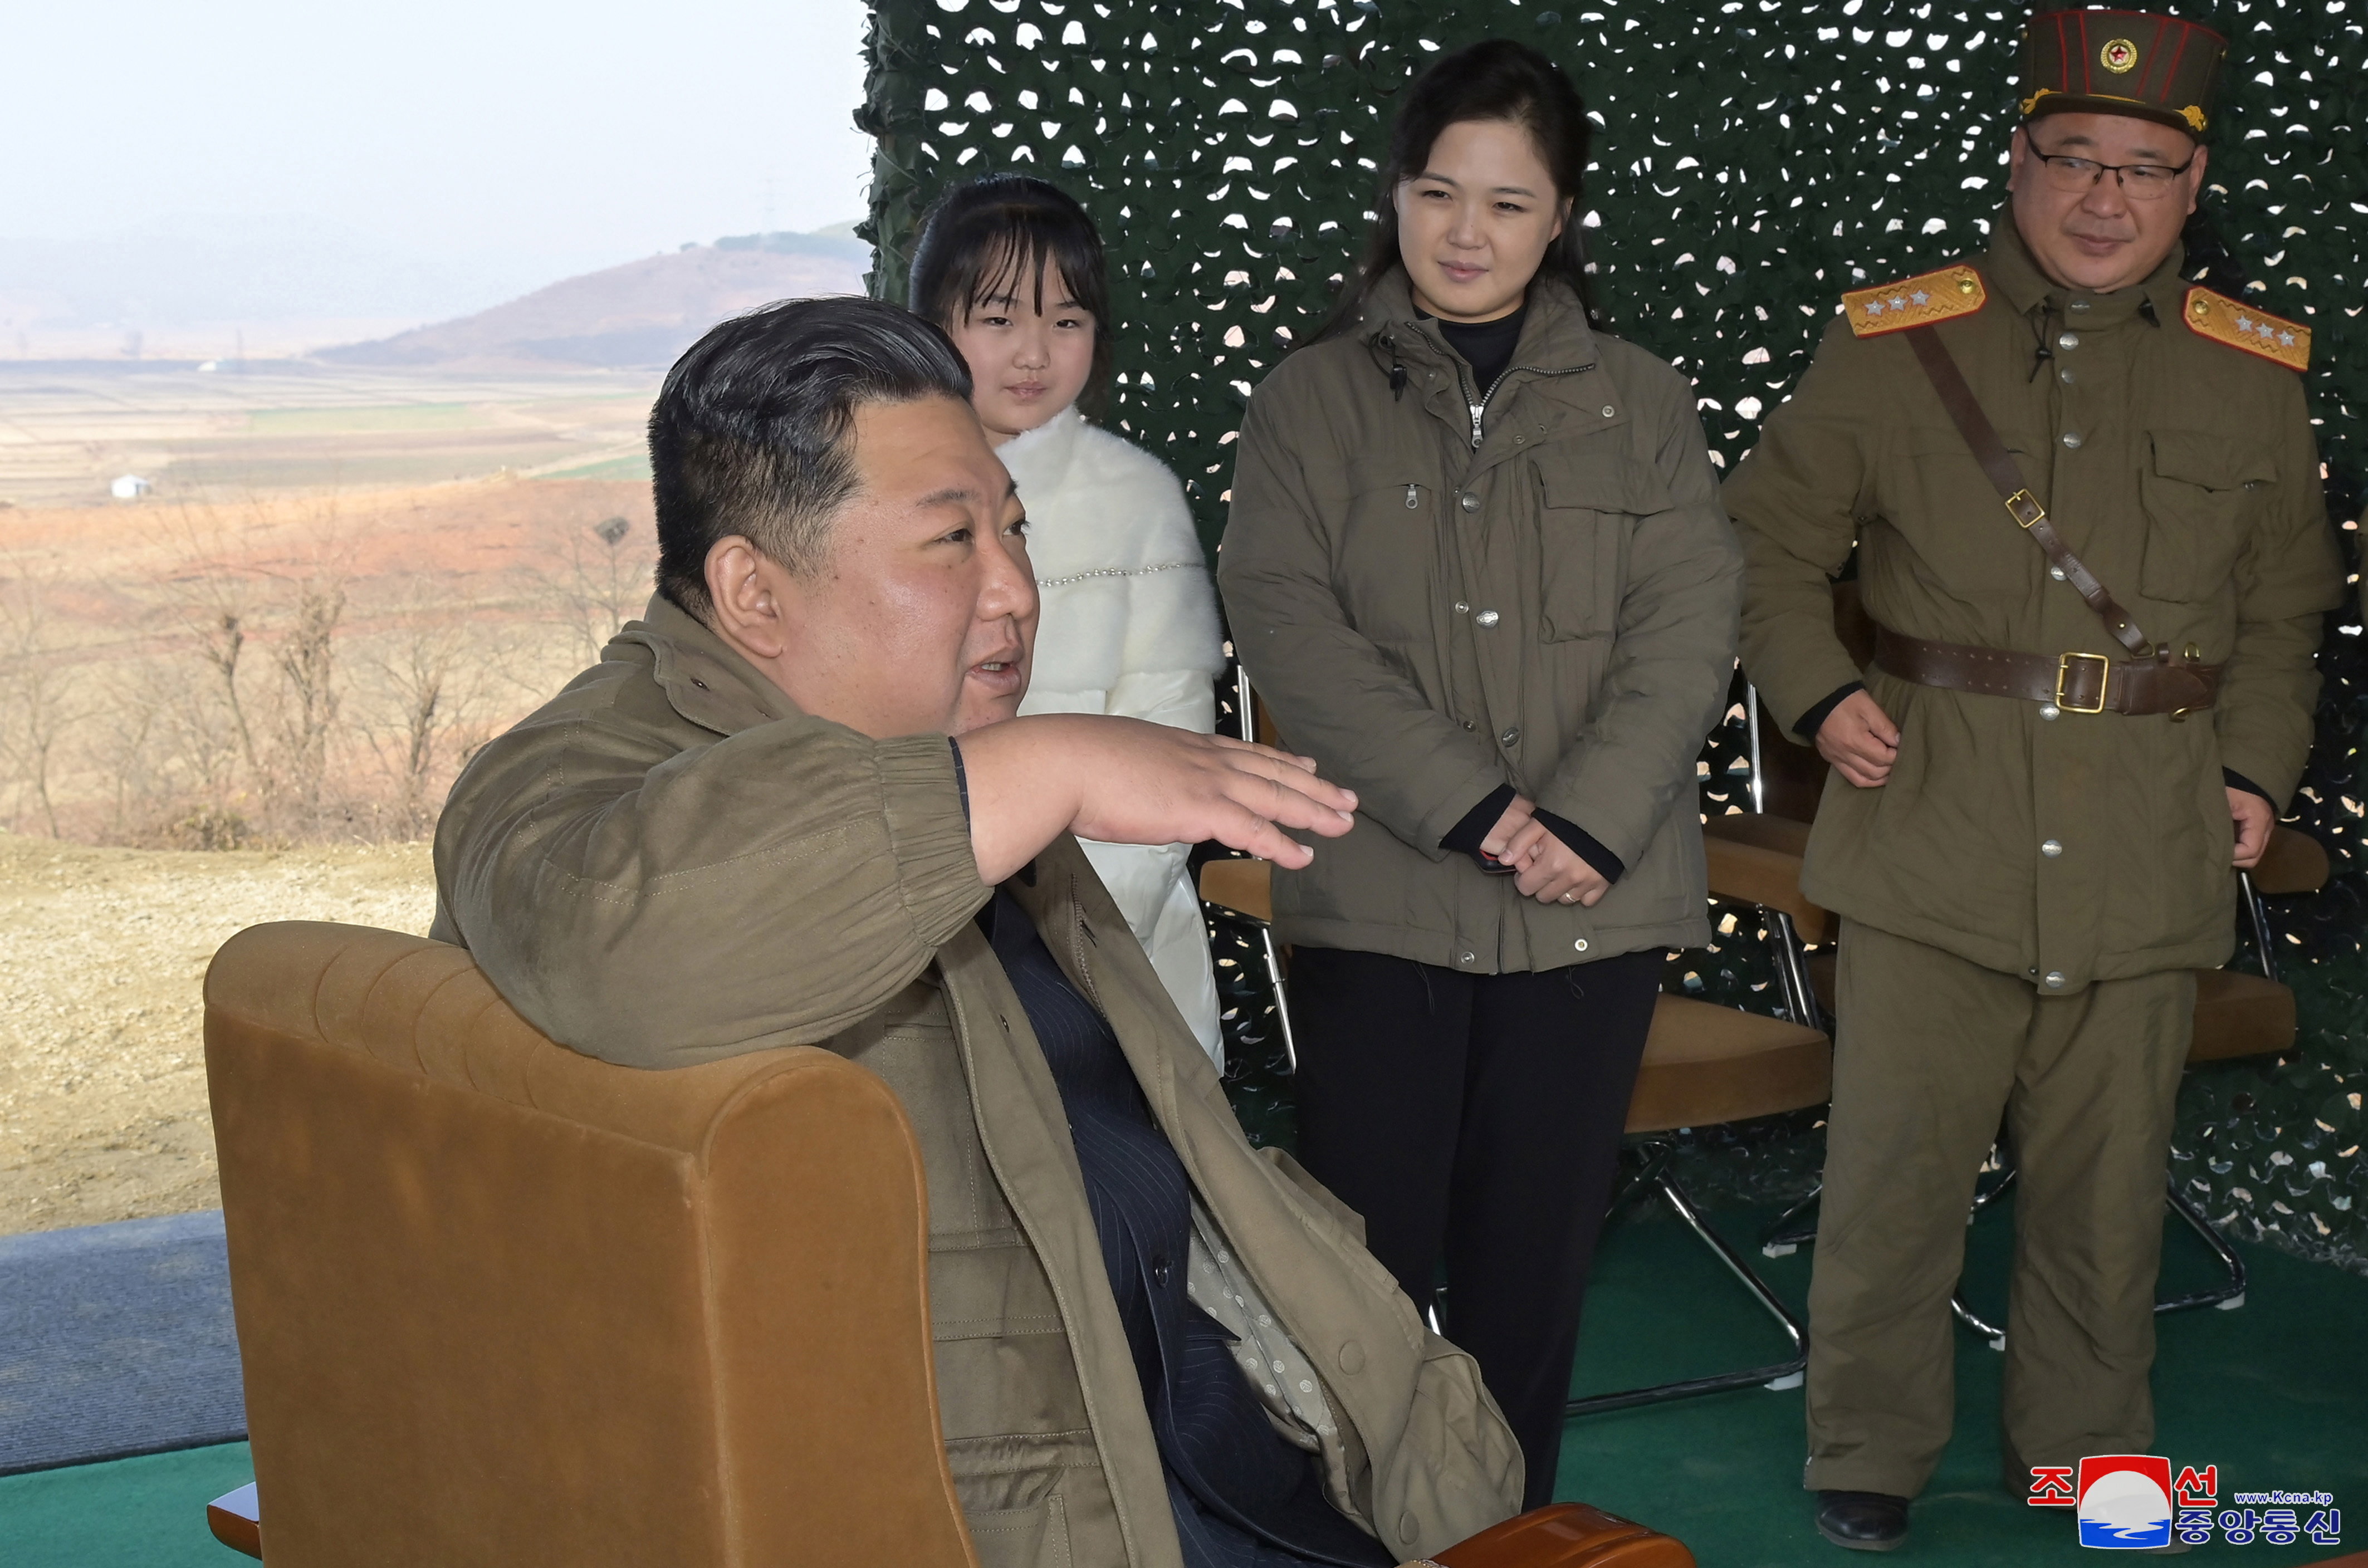 Depressziós, iszik, sír: súlyos tünetekben szenved Kim Dzsongun - Blikk